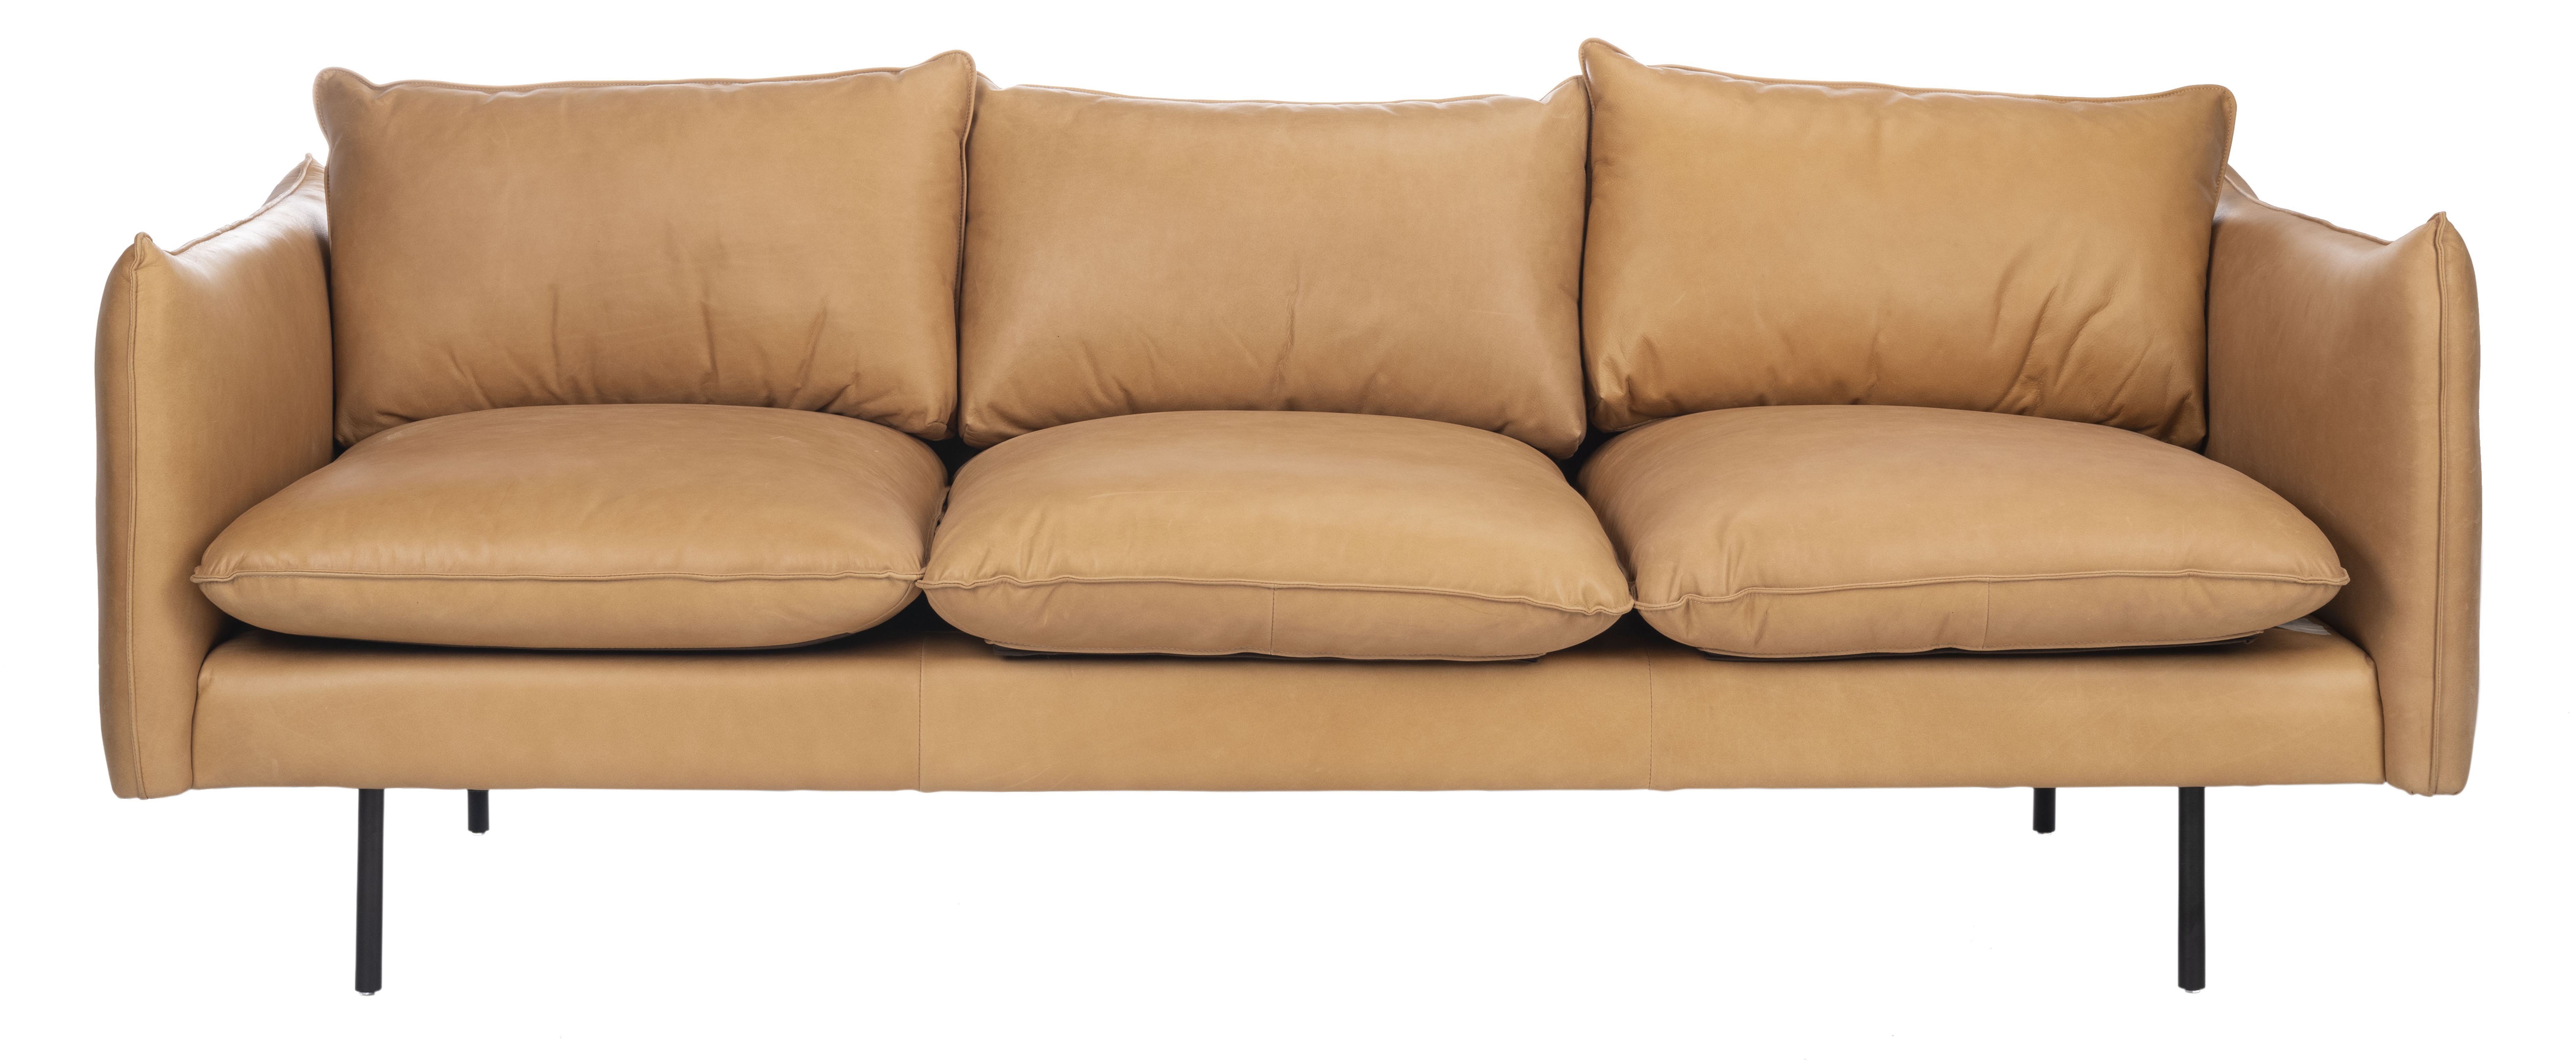 Bubba Italian Leather  Sofa - Tan - Arlo Home - Arlo Home